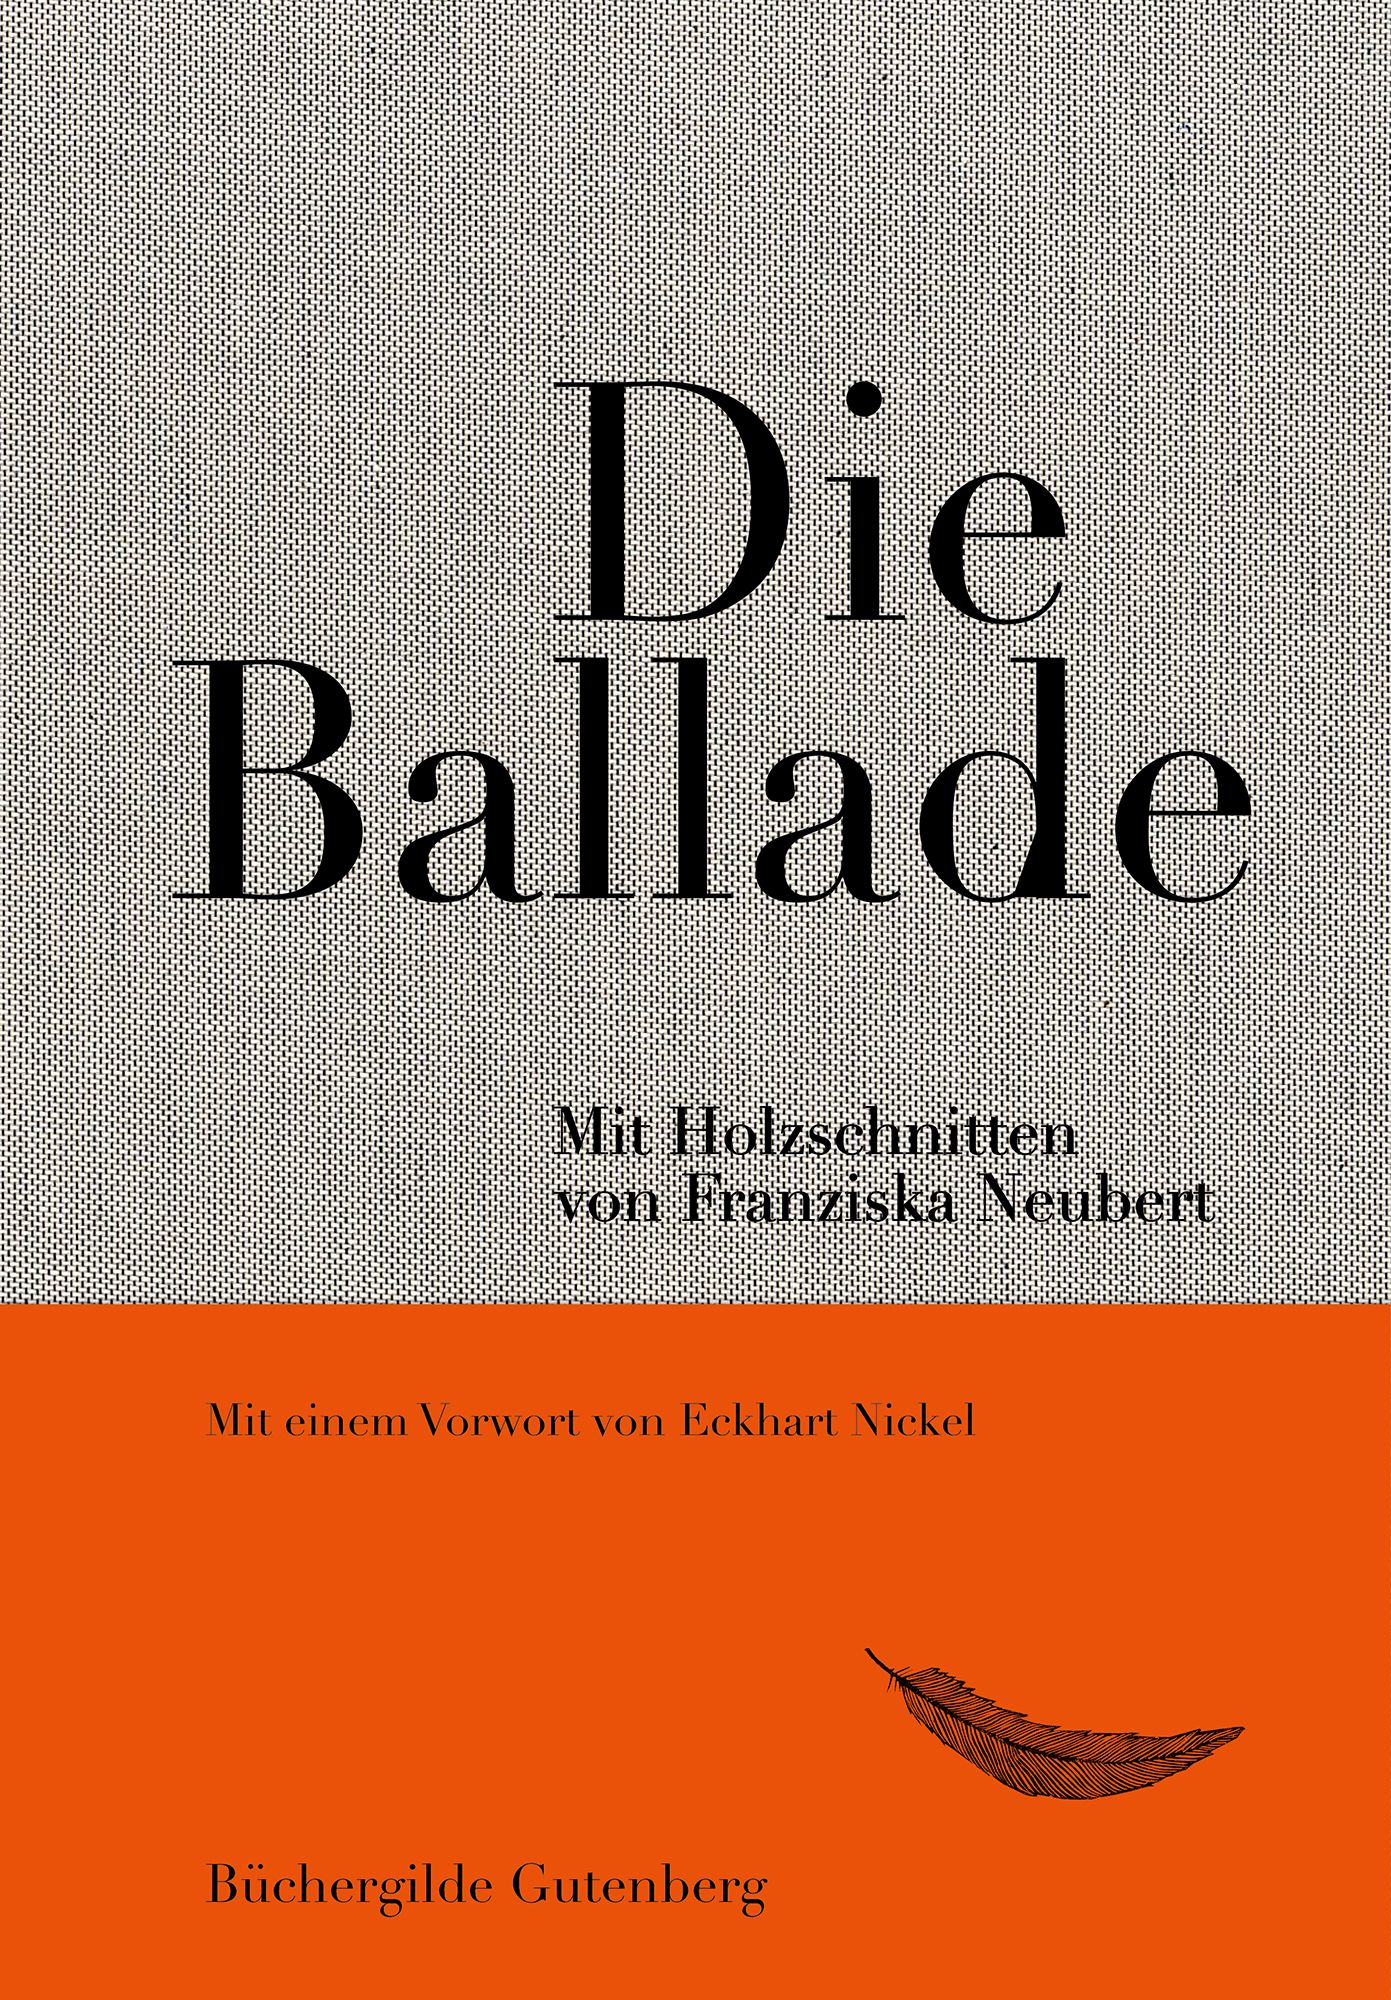 173107_Neubert_Balladenbuch_FR_01.jpg